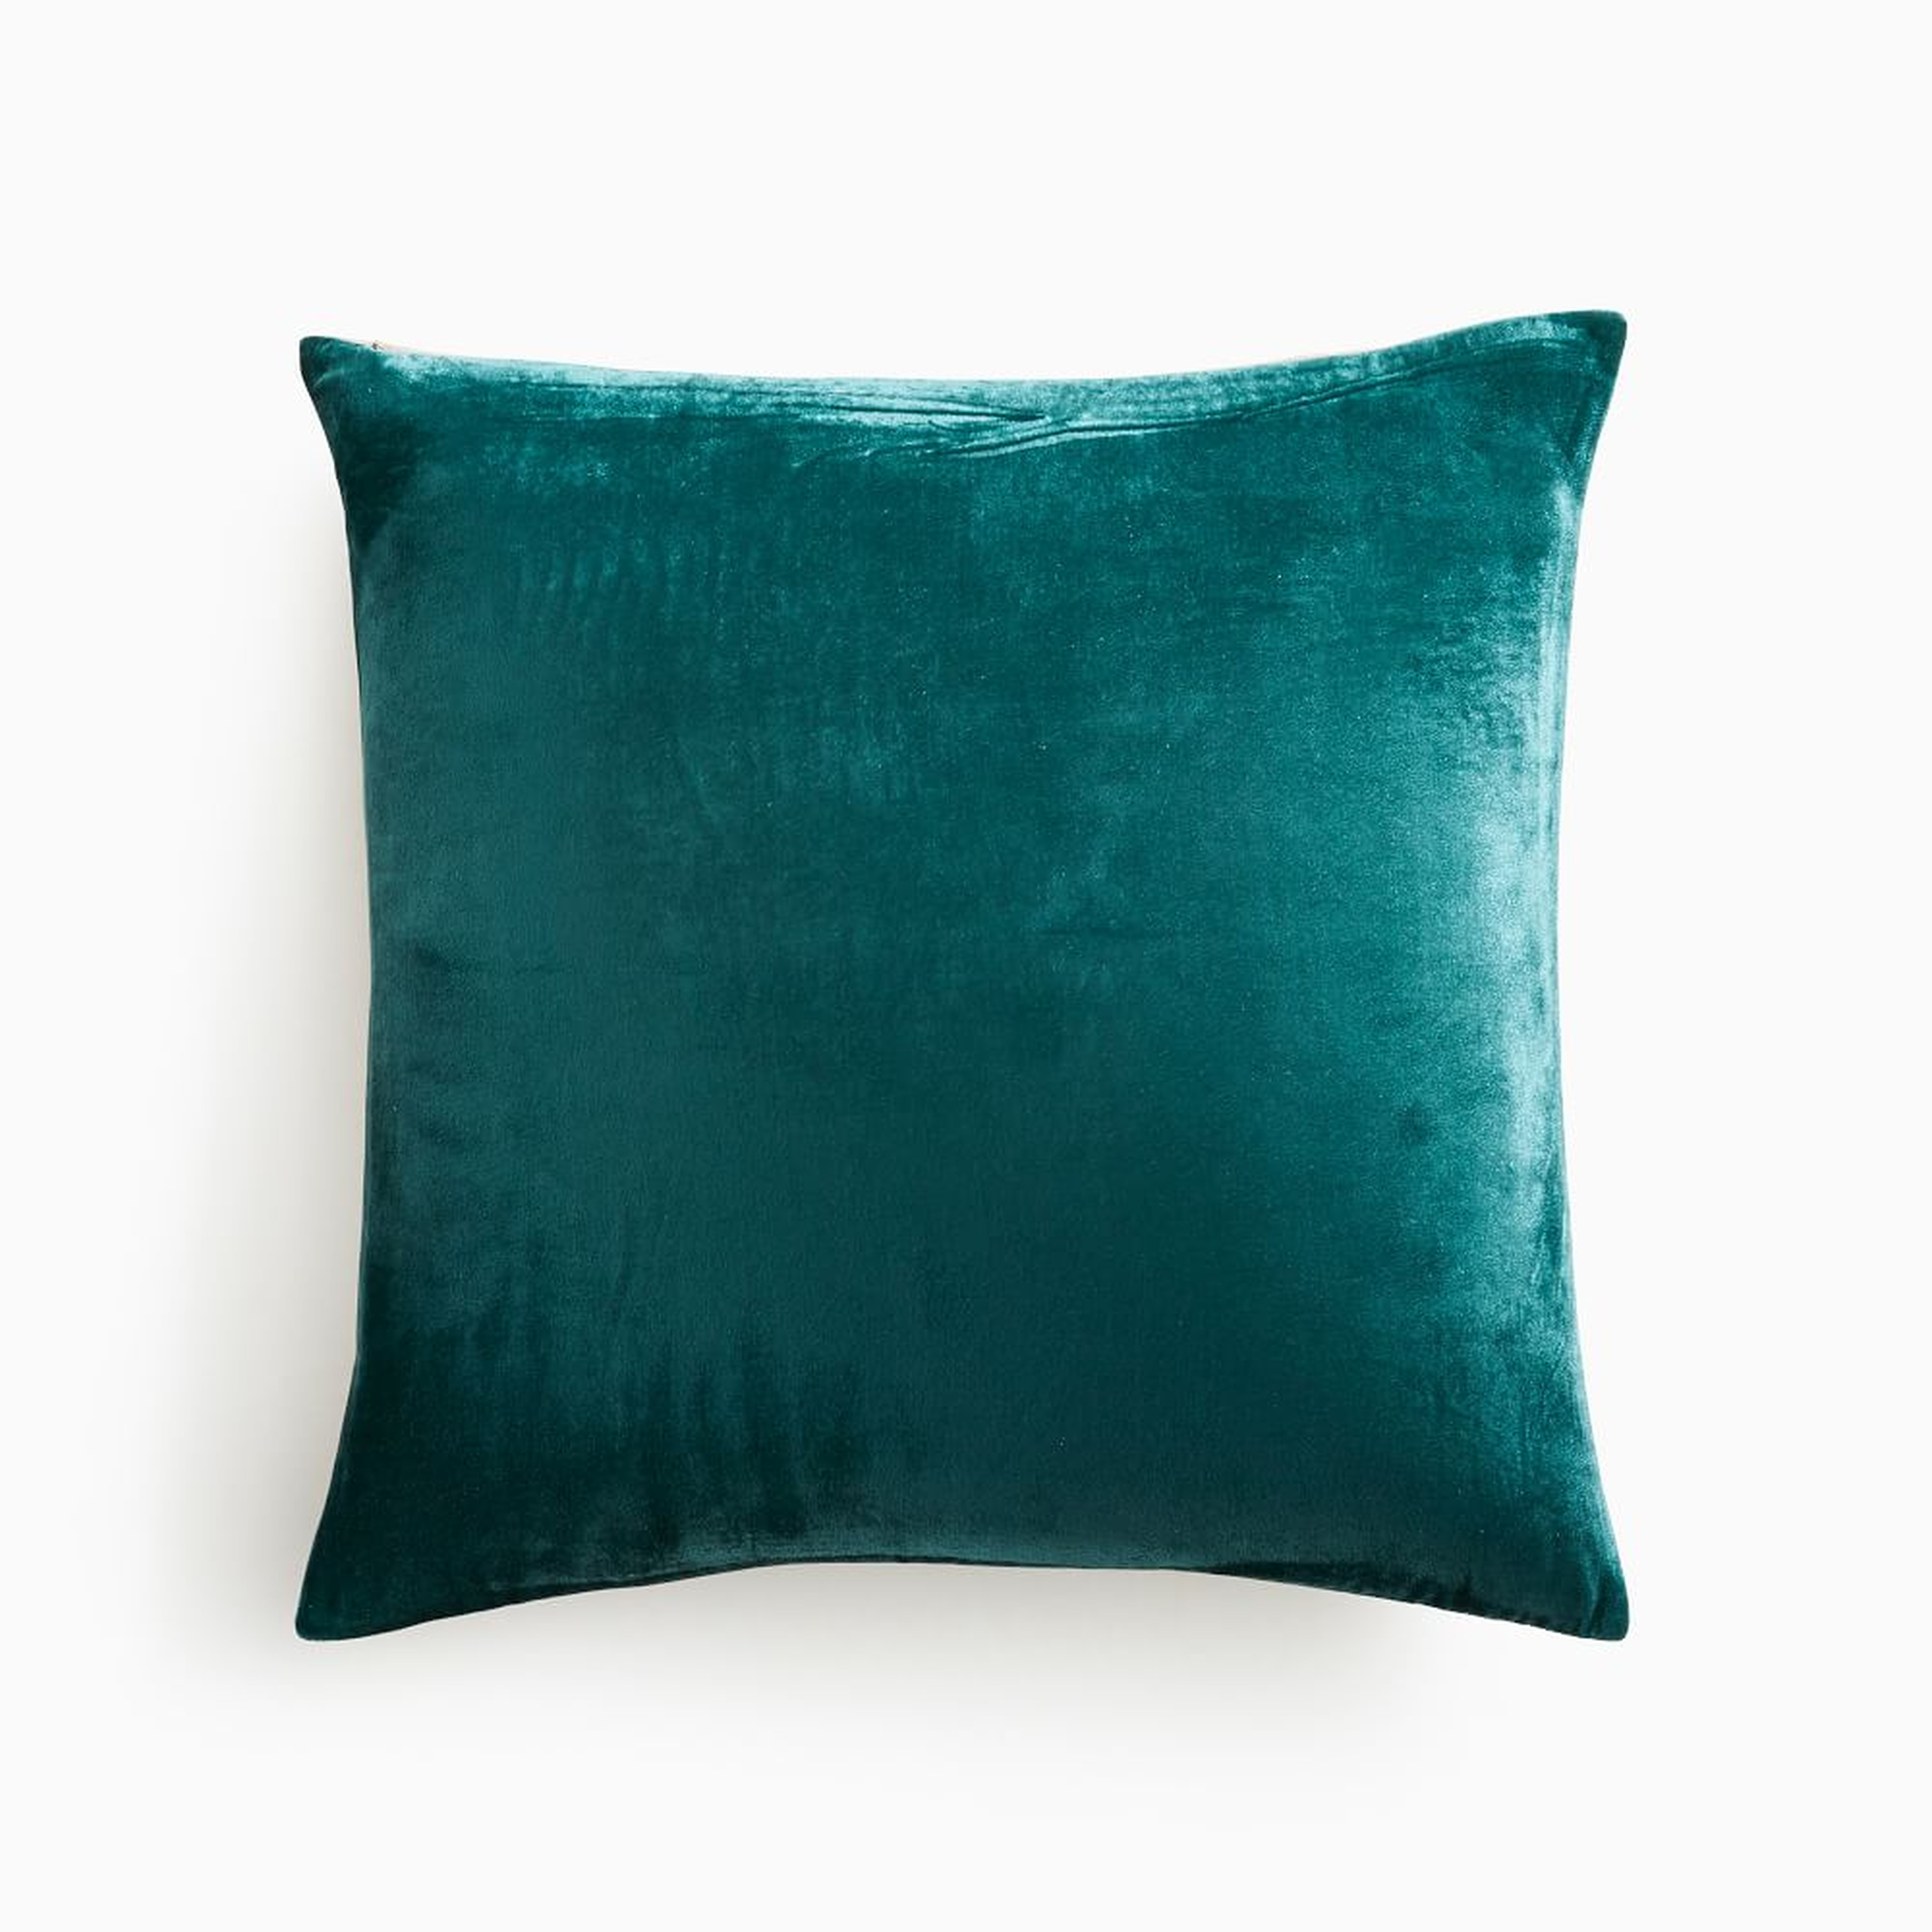 Lush Velvet Pillow Cover, 20"x20", Botanical Garden - West Elm